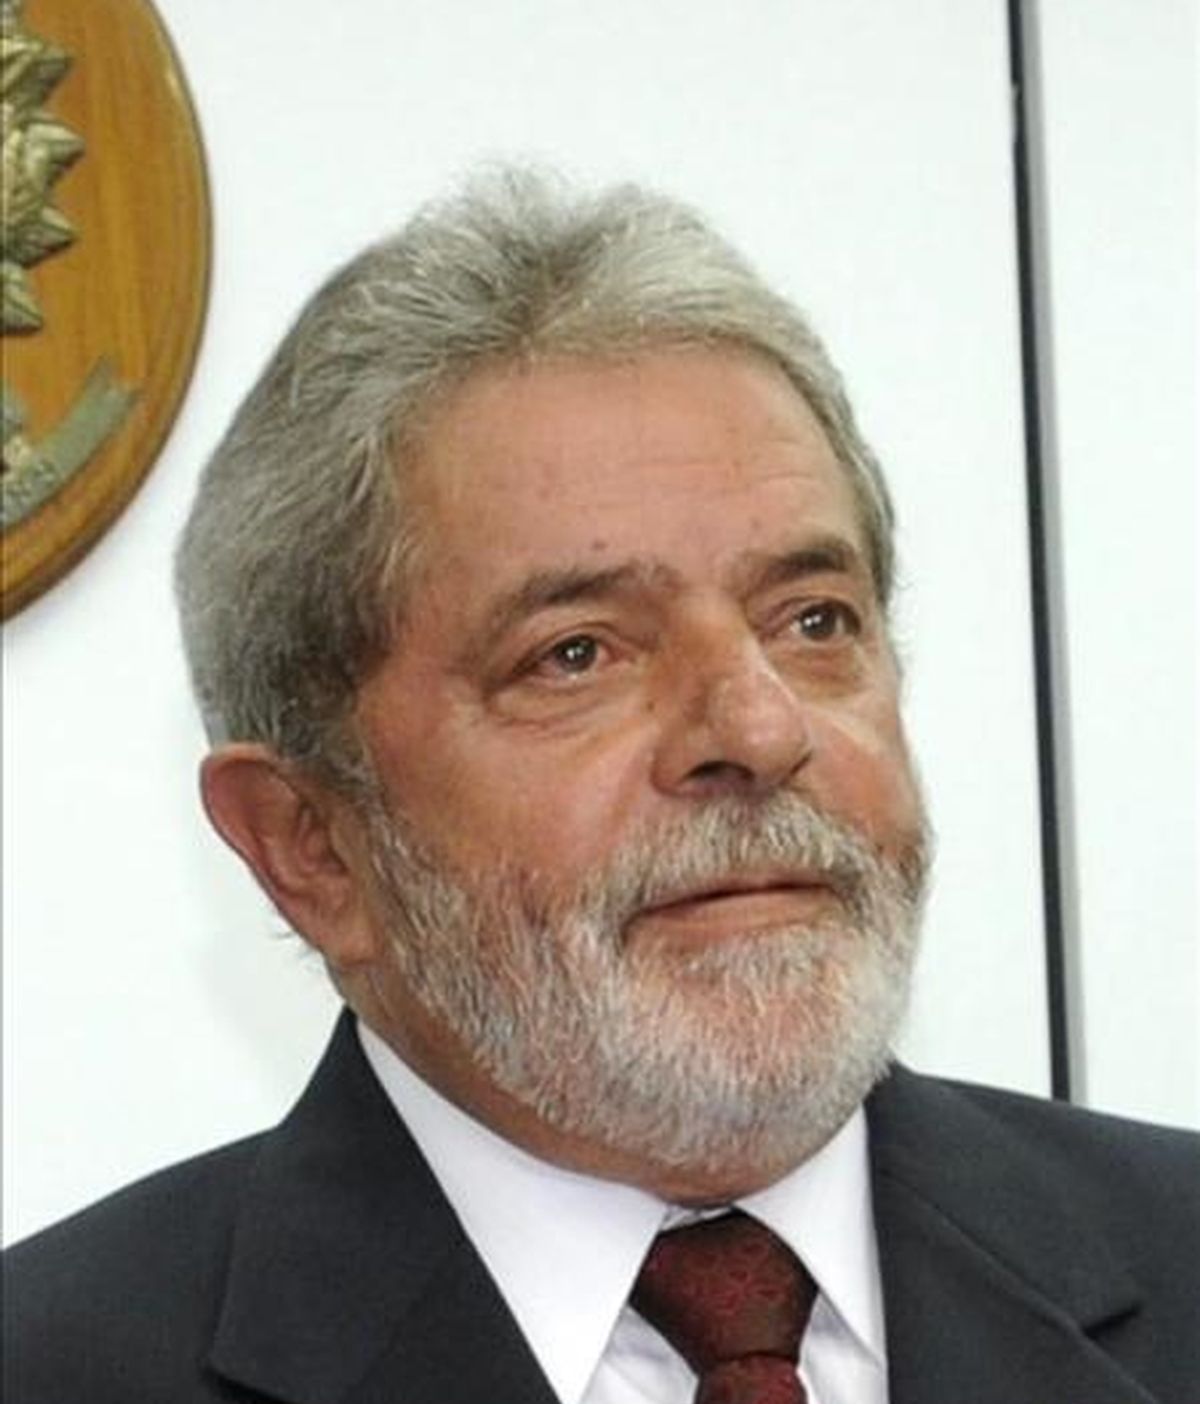 En la imagen, el presidente brasileño, Luiz Inácio Lula da Silva. EFE/Archivo